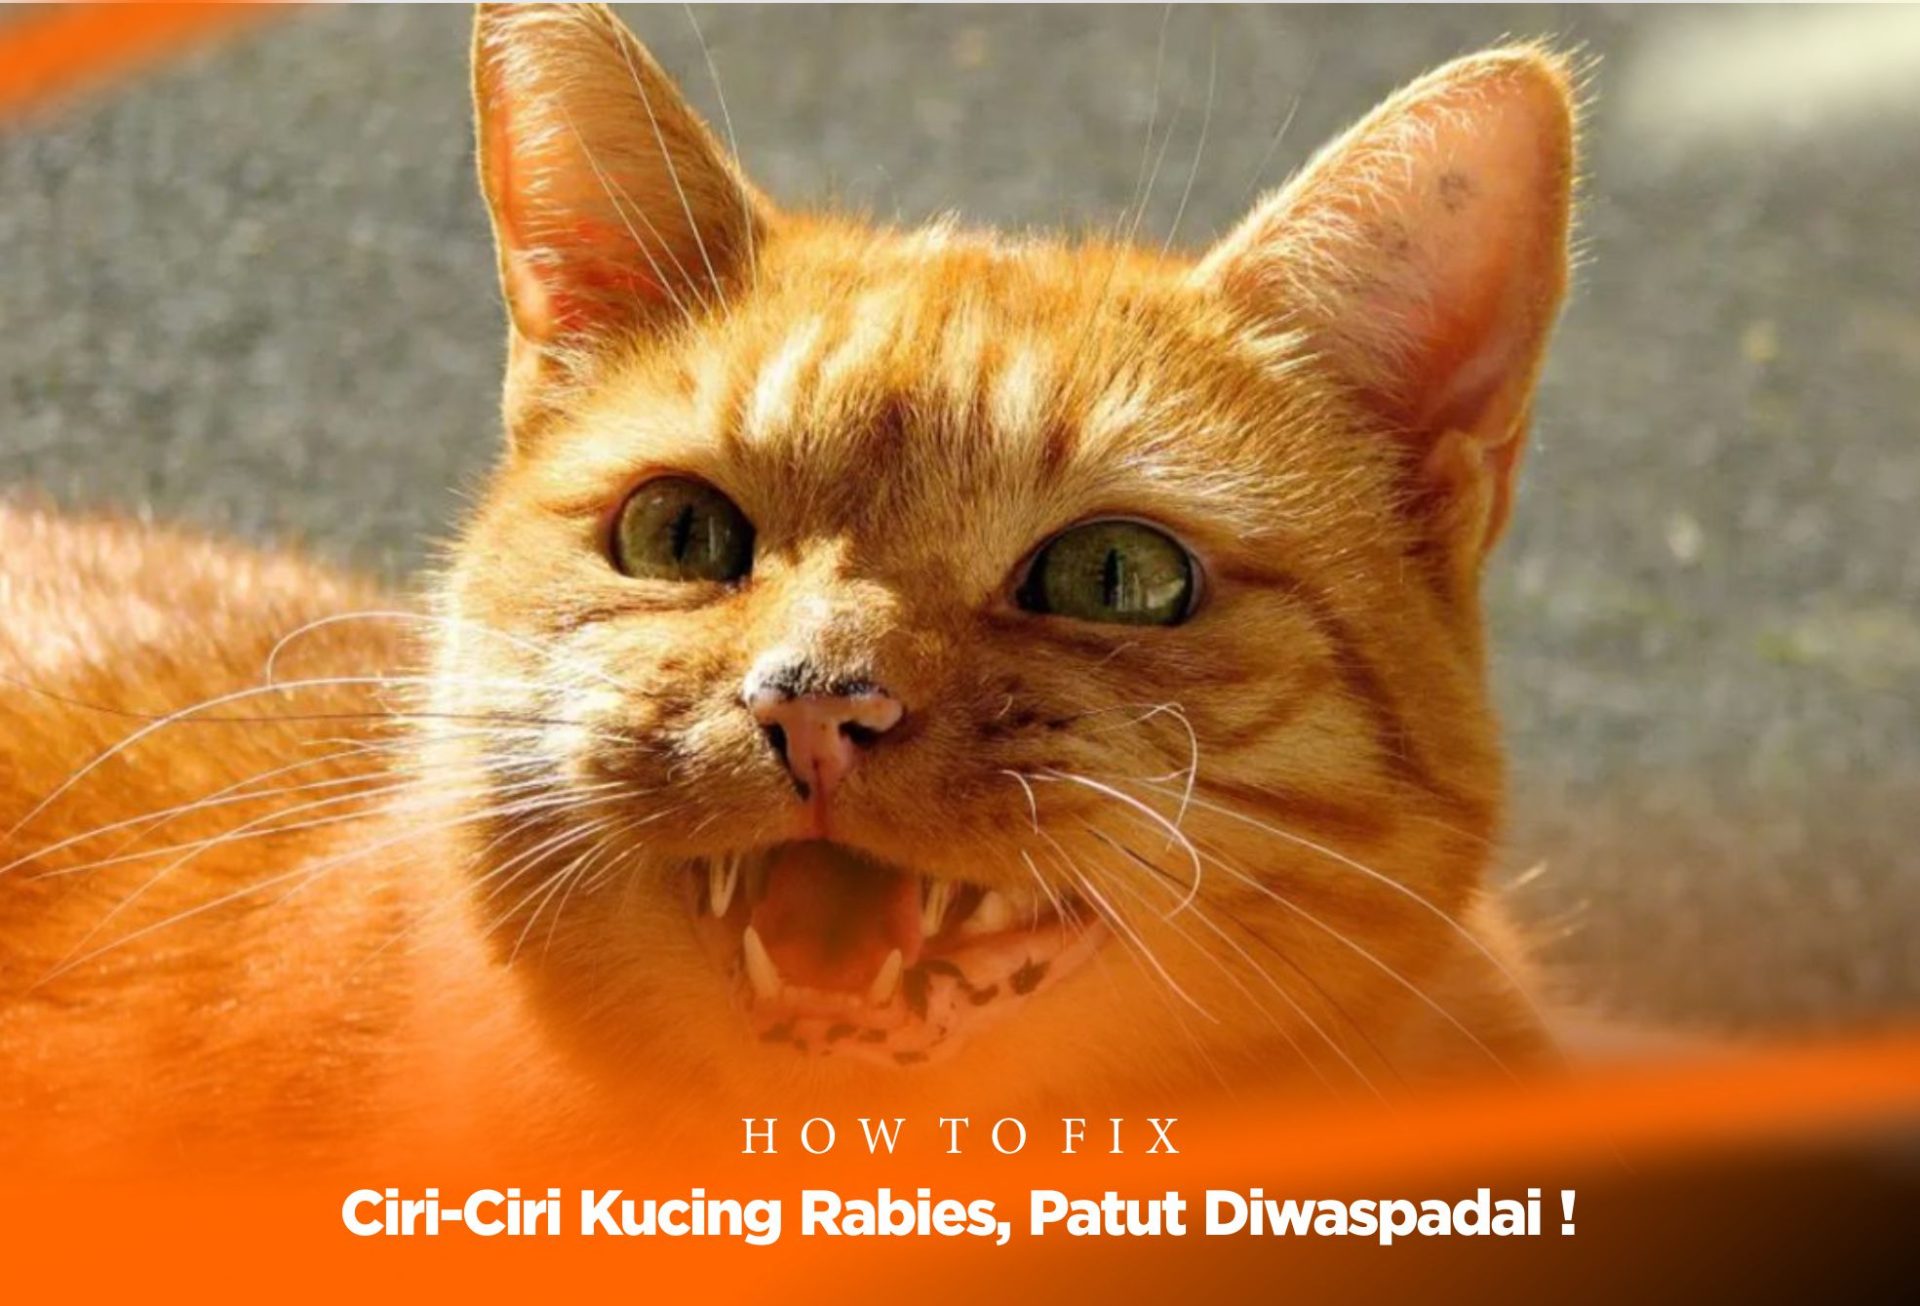 Ciri-Ciri Kucing Rabies, Patut Diwaspadai !